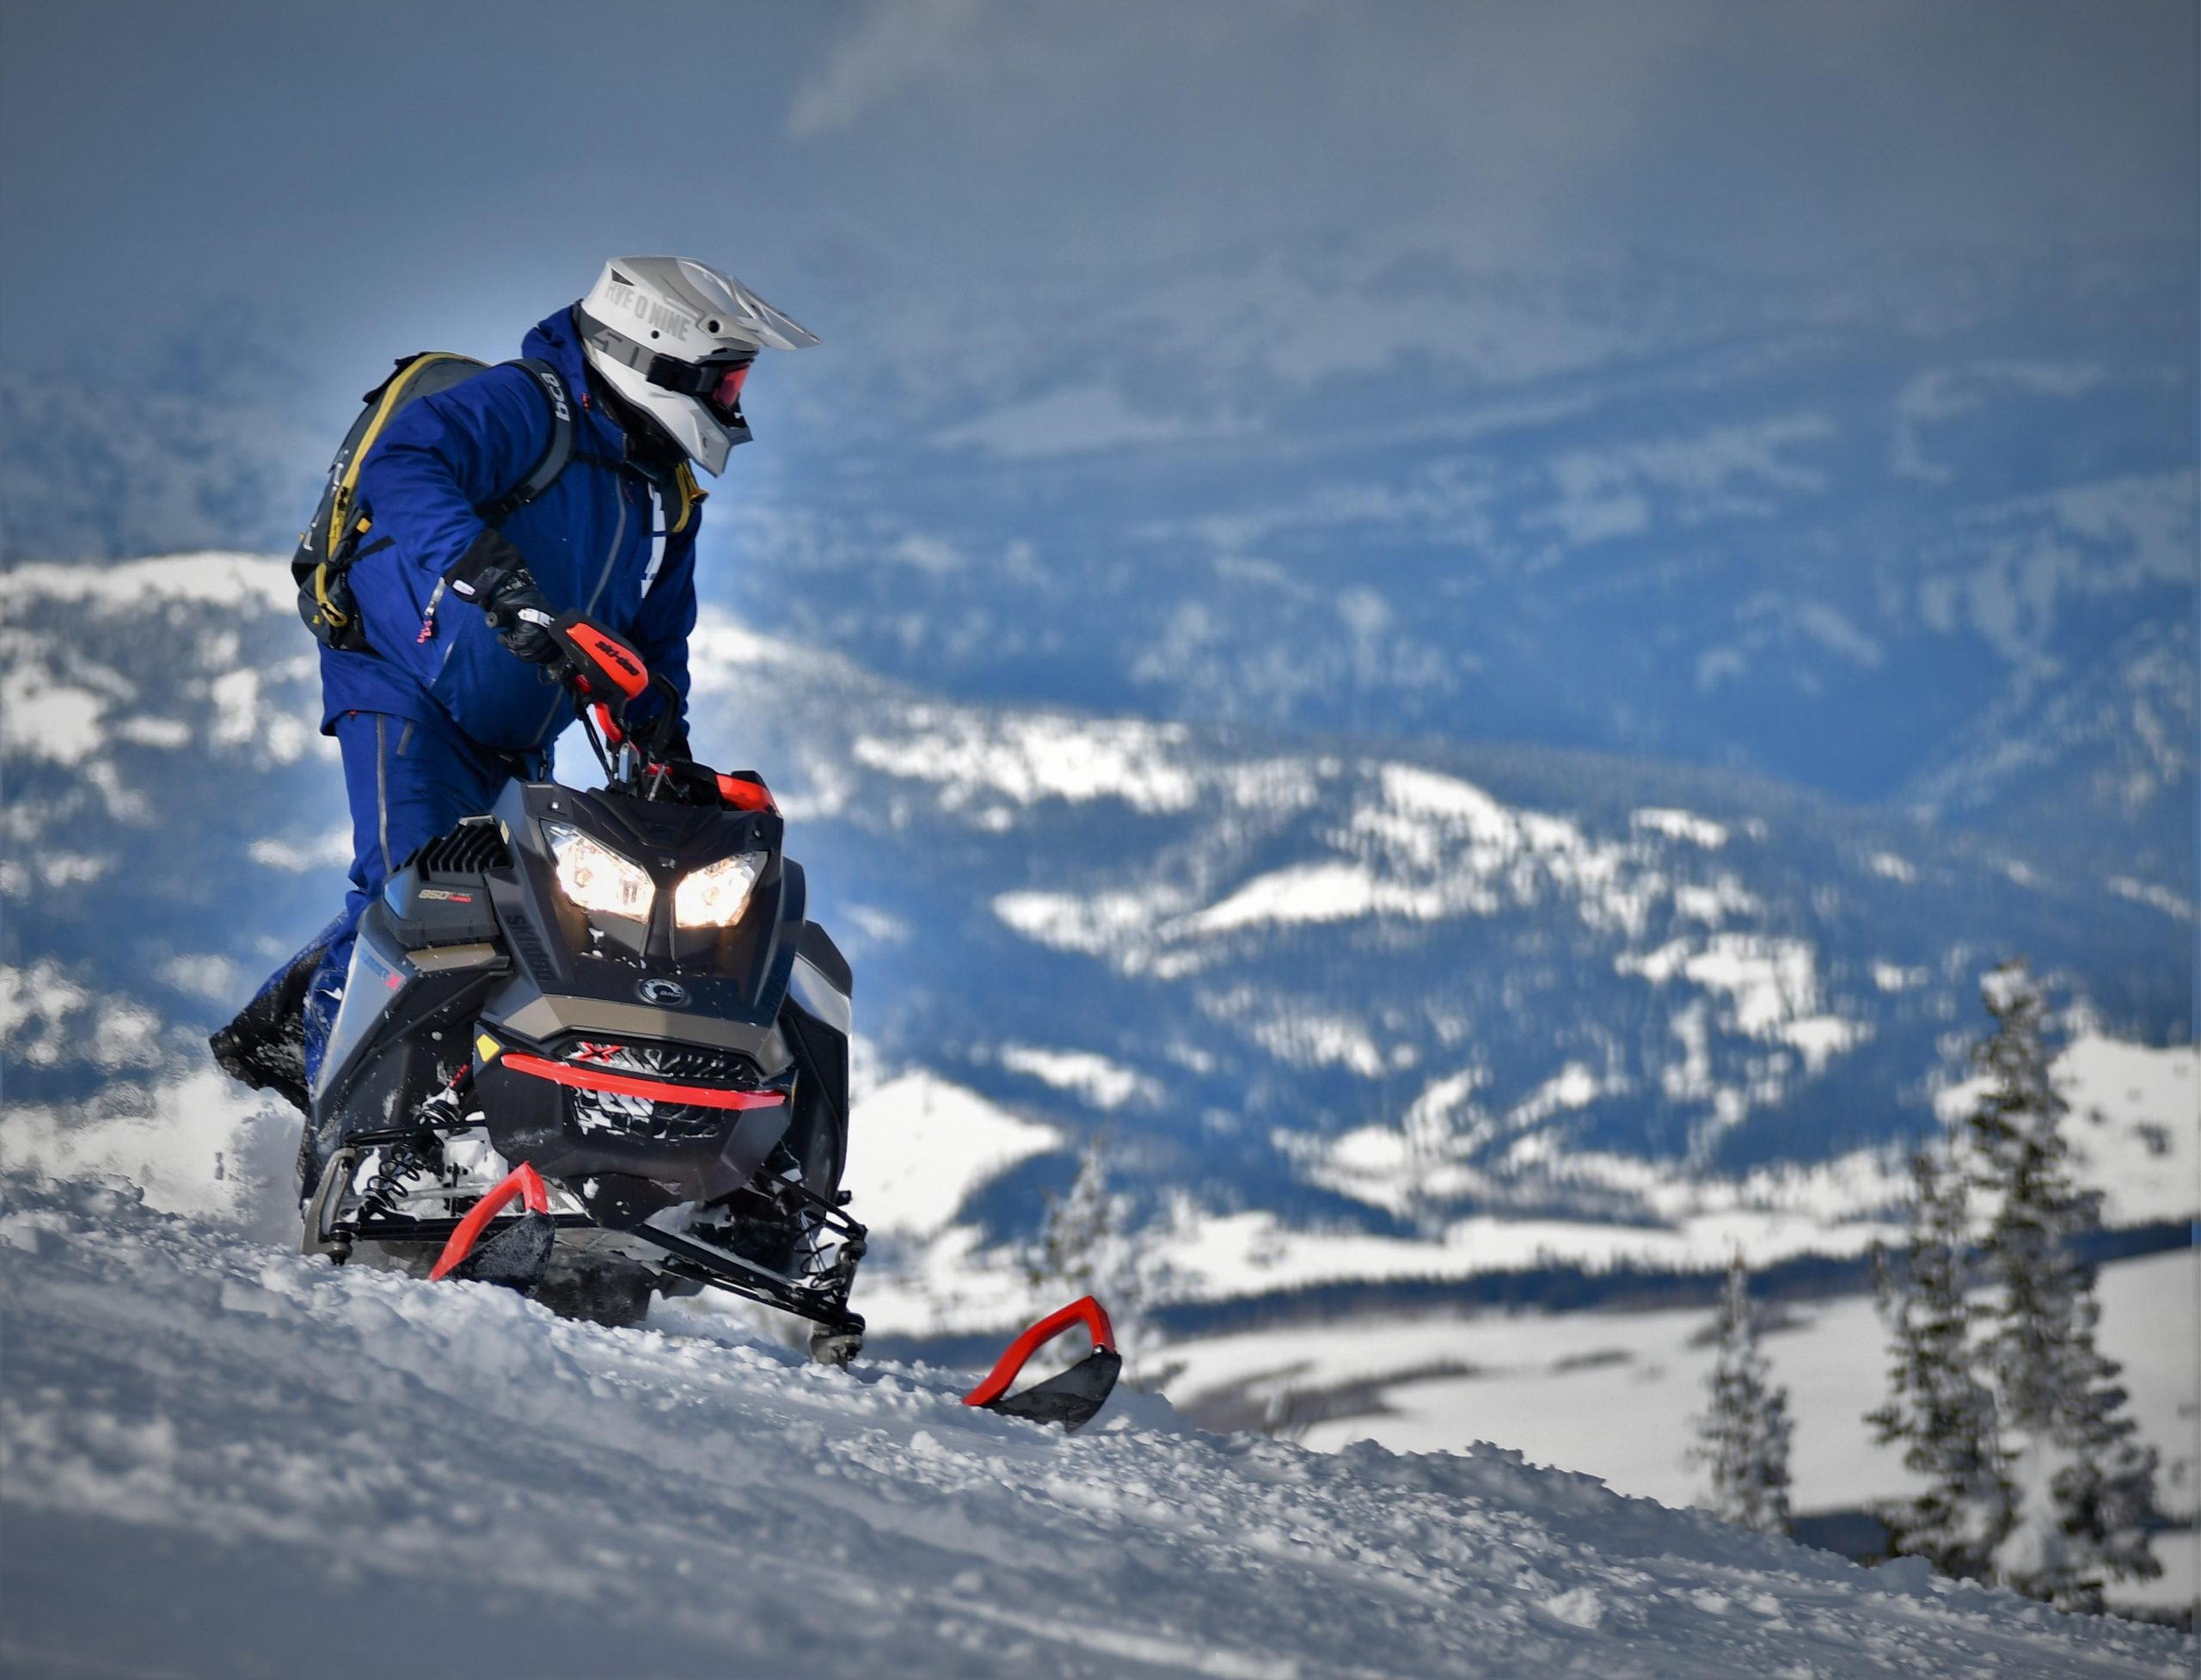 Ski-Doo montagne 2022 - Un segment populaire et attendu des amateurs de liberté